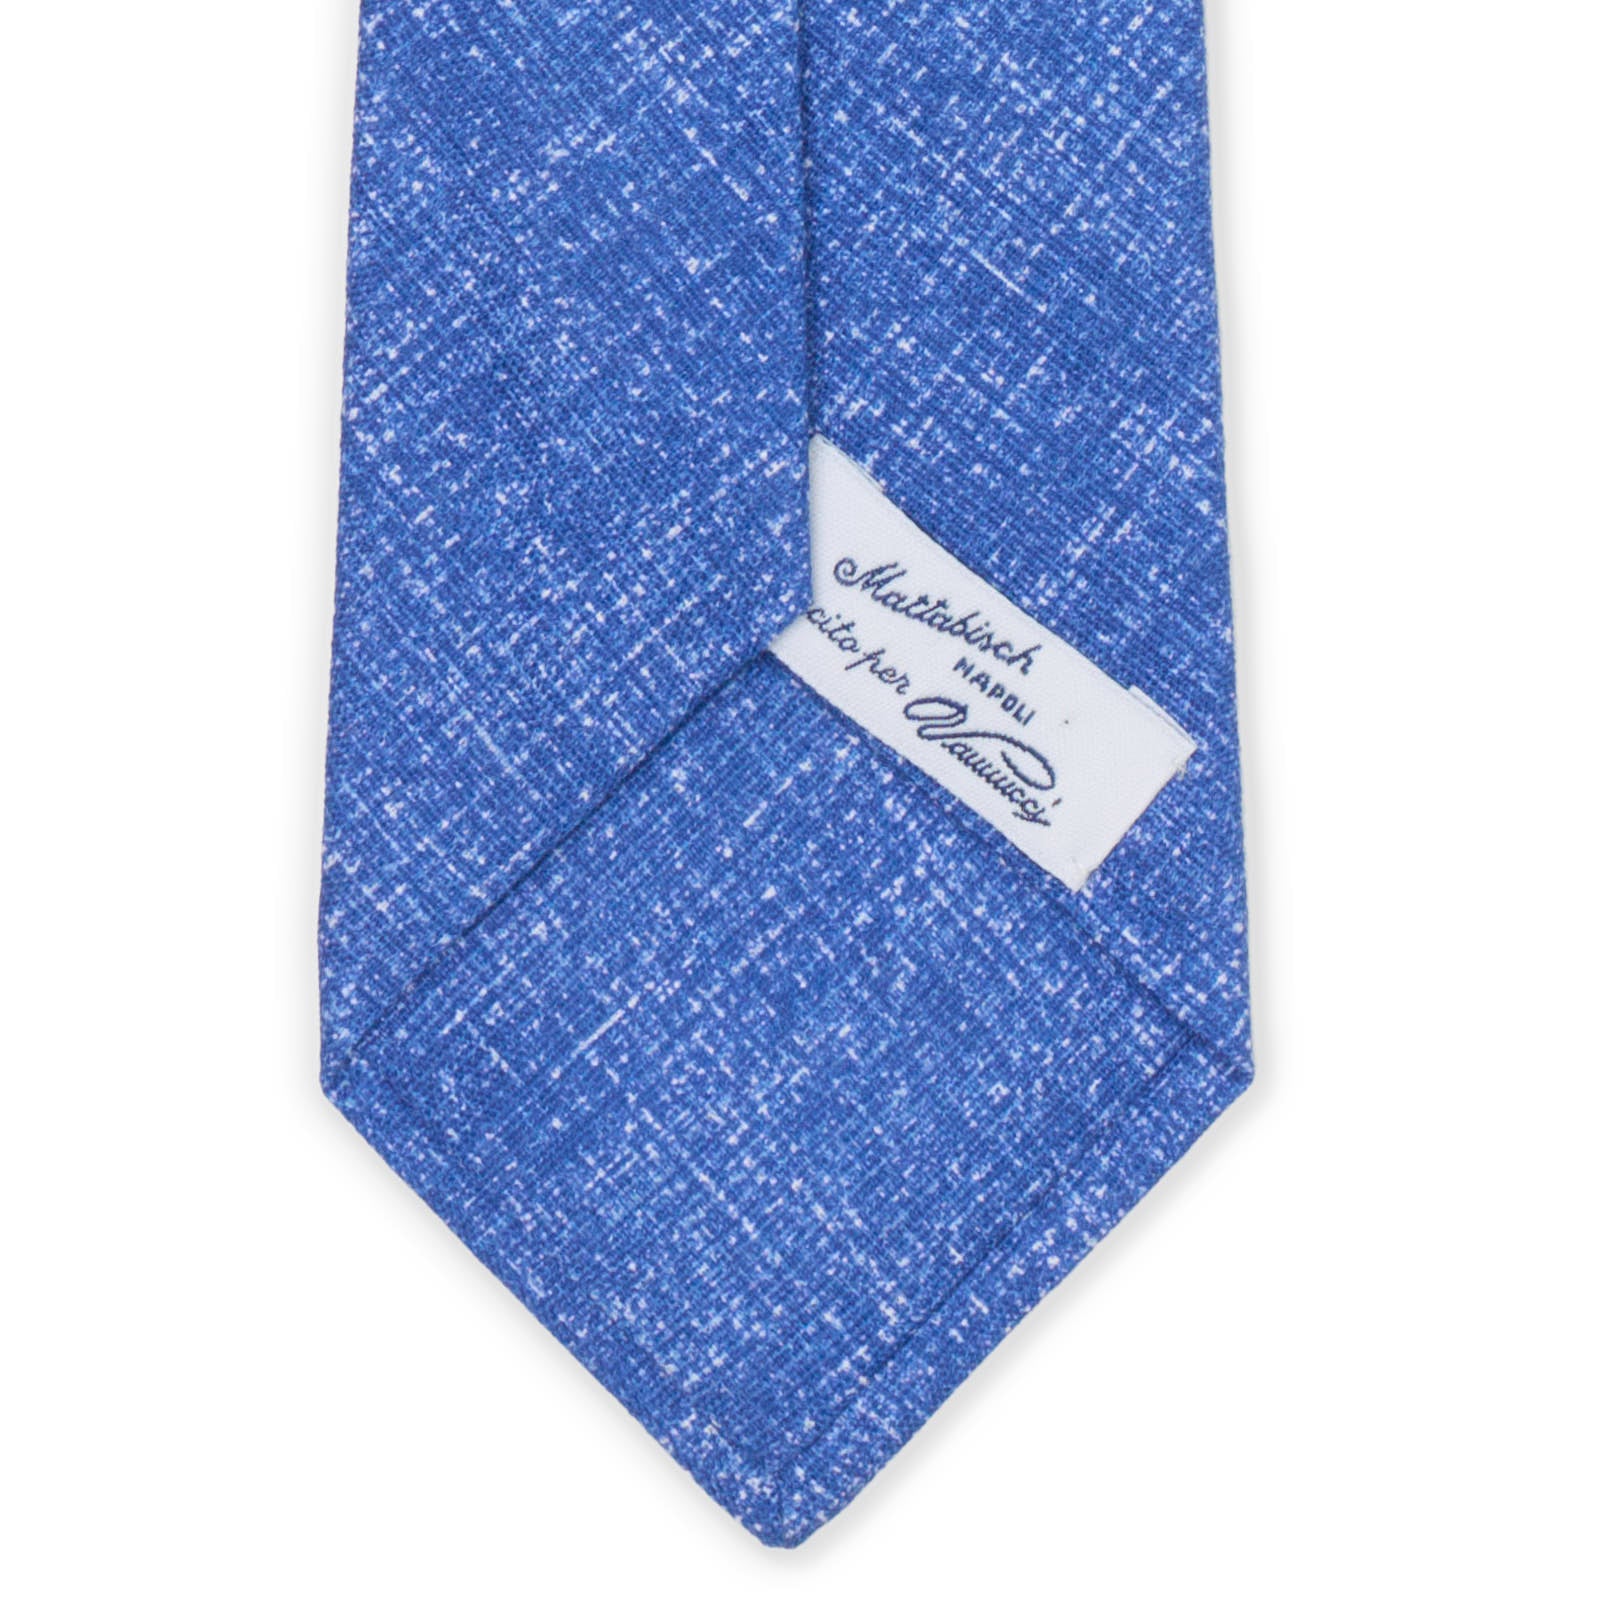 MATTABISCH for VANNUCCI Blue Abstract Linen-Cotton Tie NEW